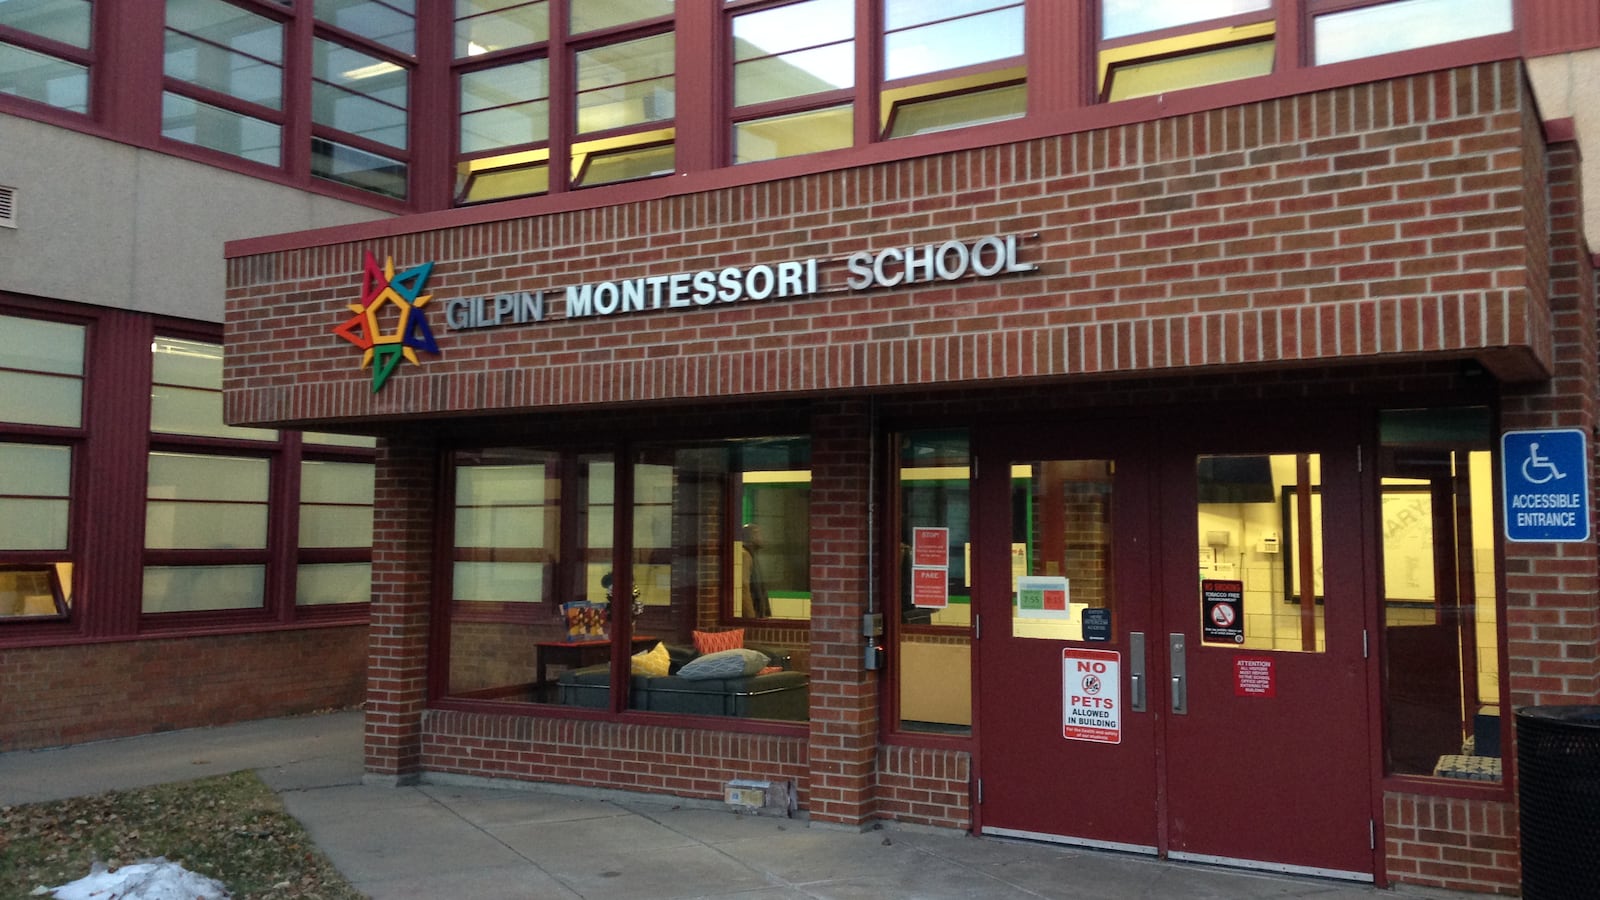 The former Gilpin Montessori School. (Photo by Melanie Asmar)